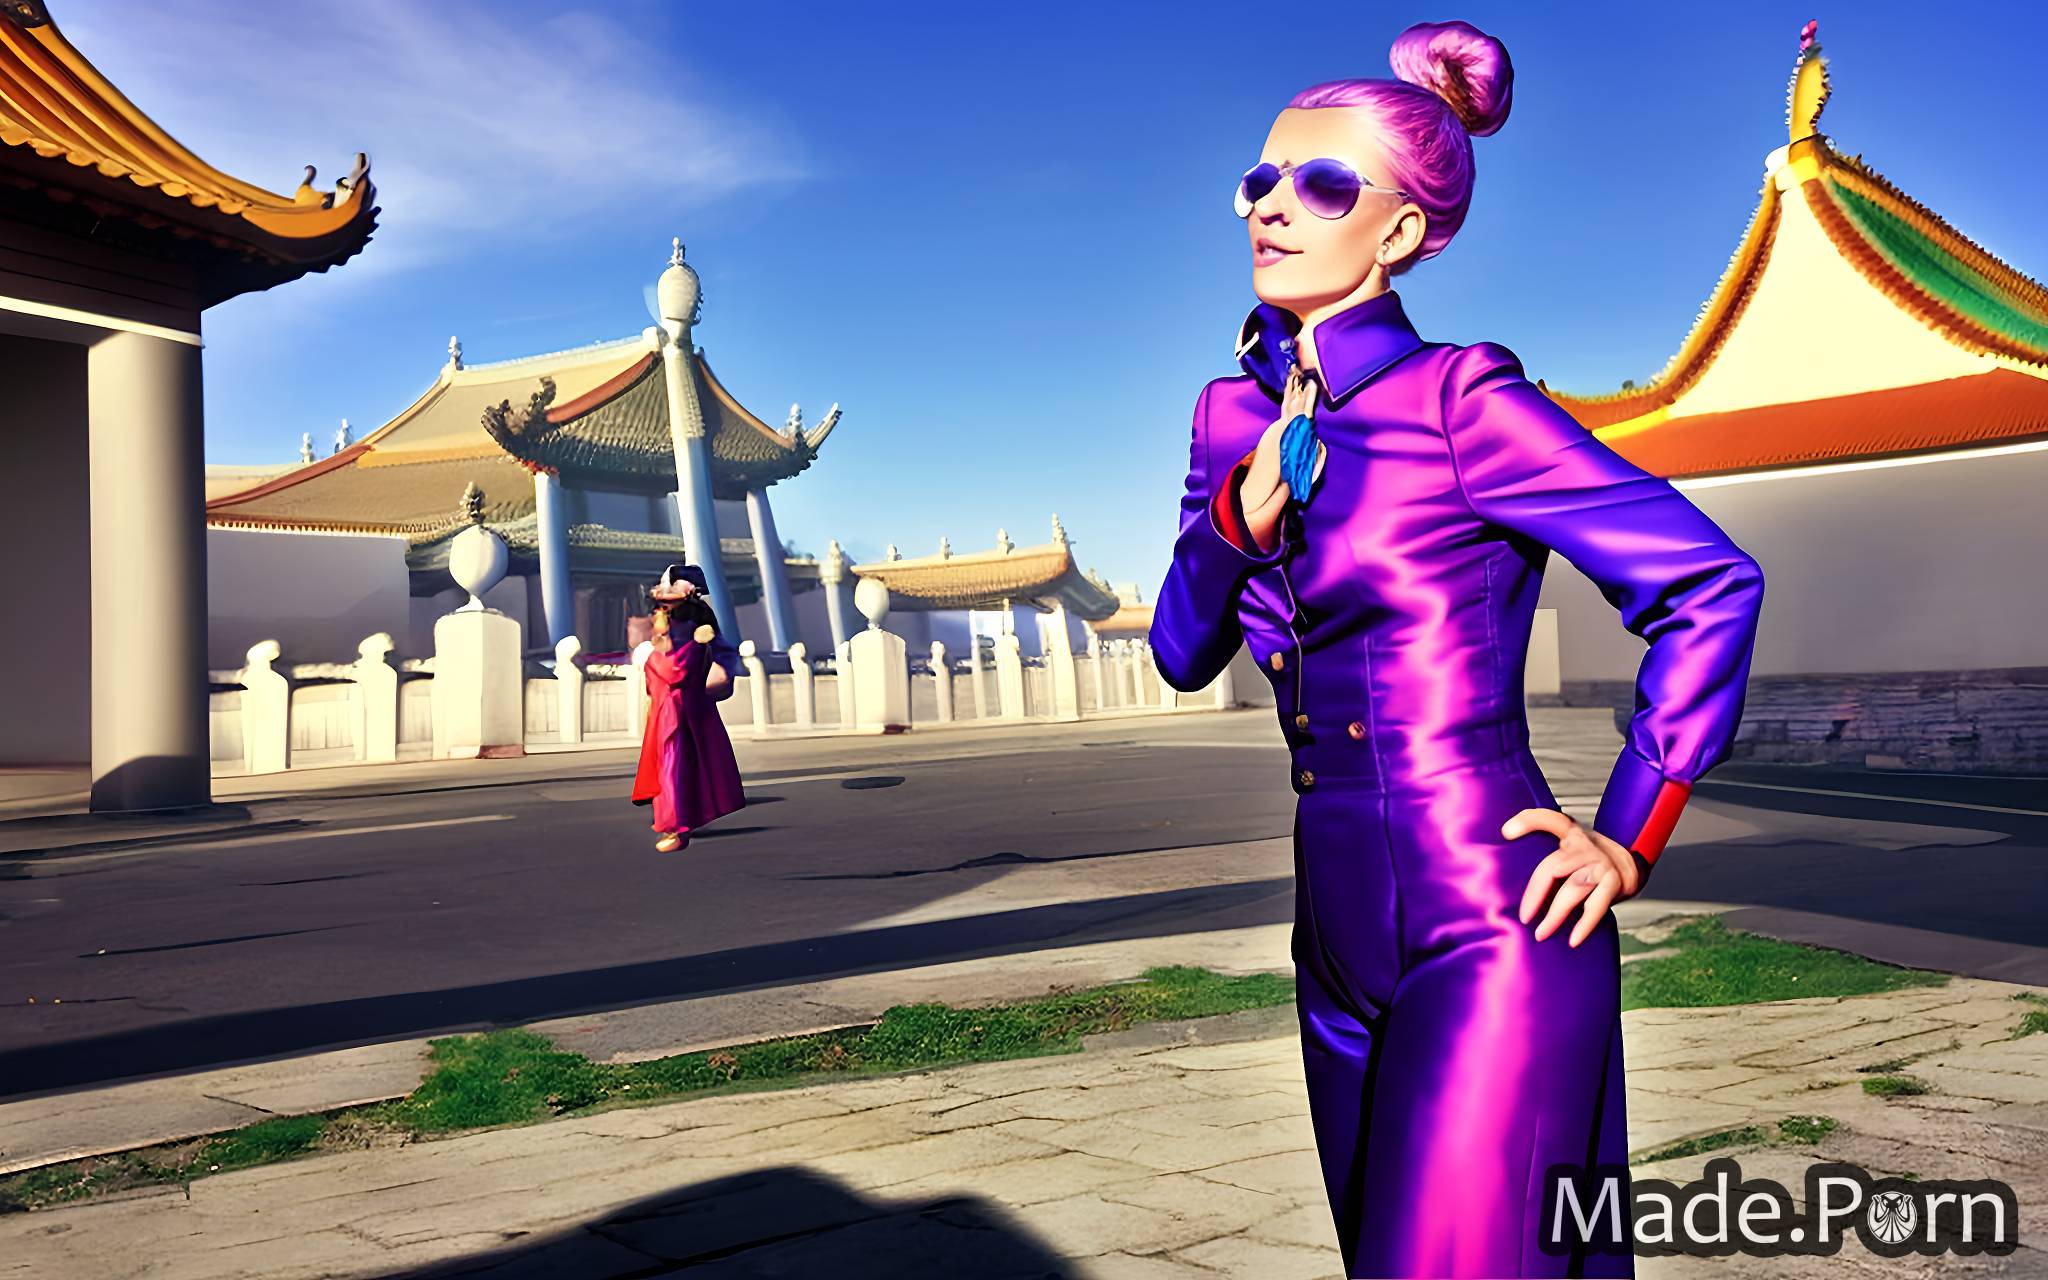 cosplay portrait scandinavian vivid Forbidden City, China morning flight attendant